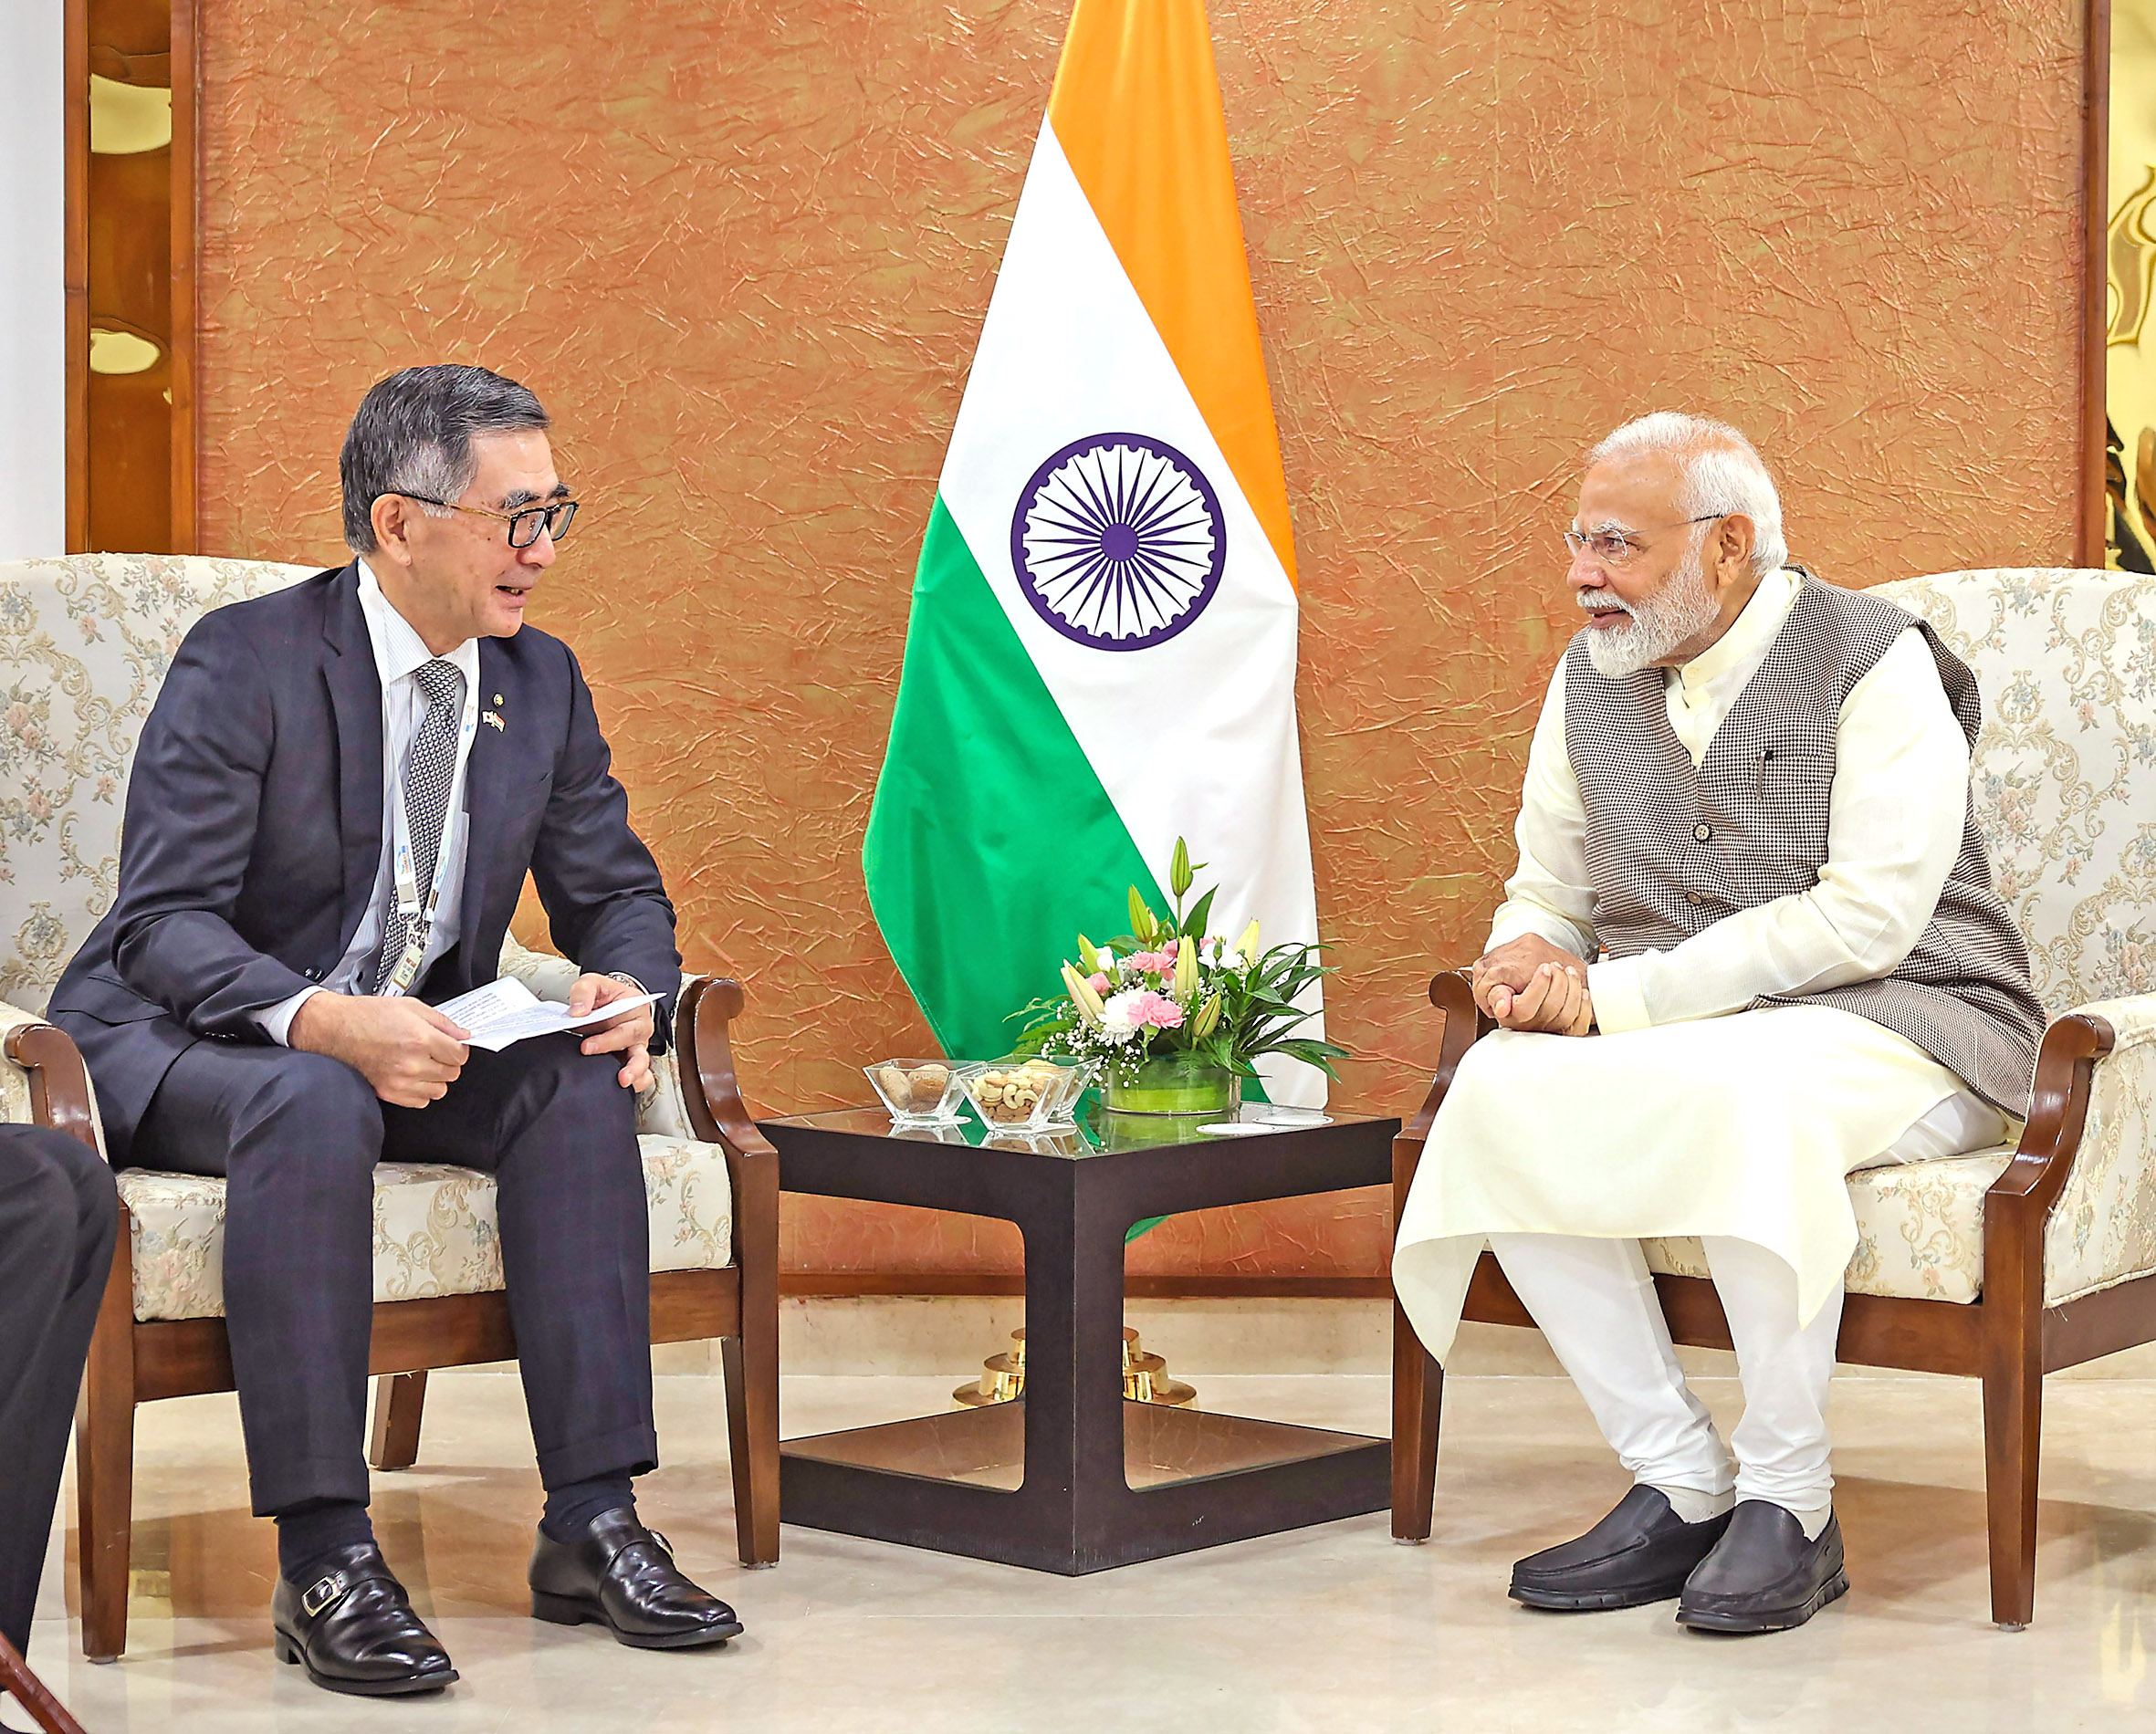 PM Modi with Suzuki Motor Corp President Toshihiro Suzuki.